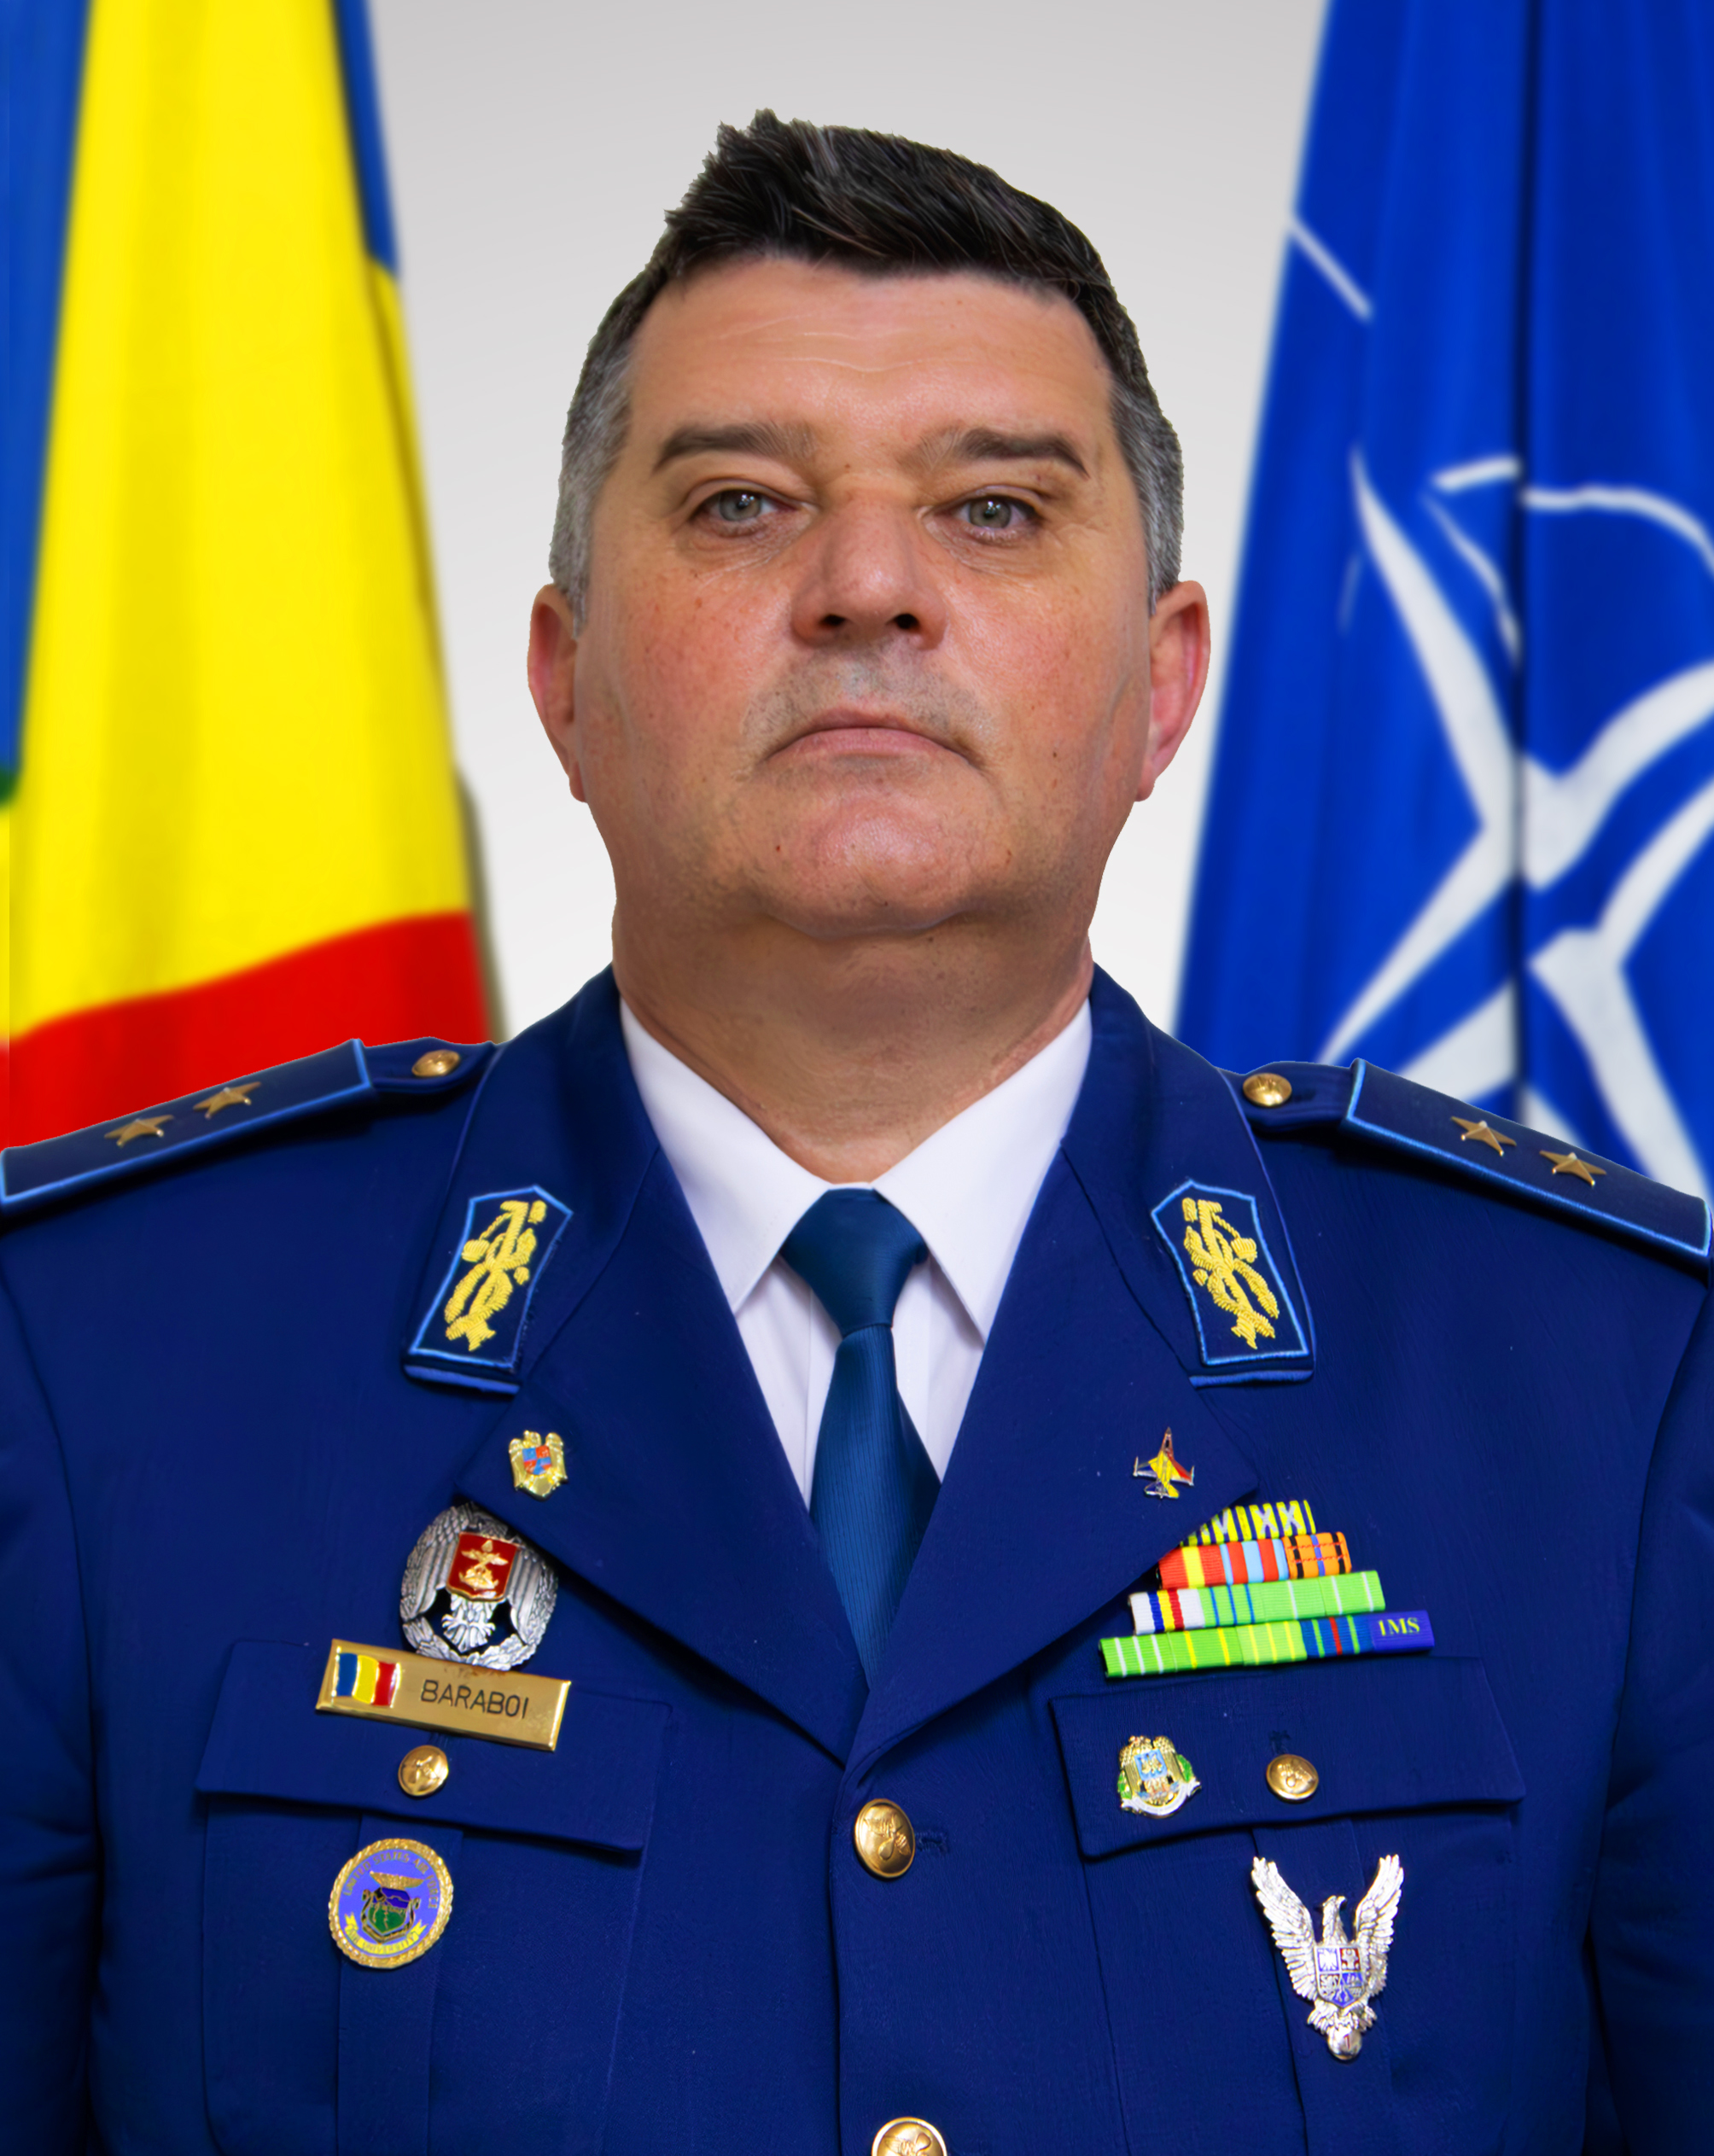 Şeful Statului Major al Forţelor Aeriene Române, generalul-maior Leonard Gabriel Baraboi